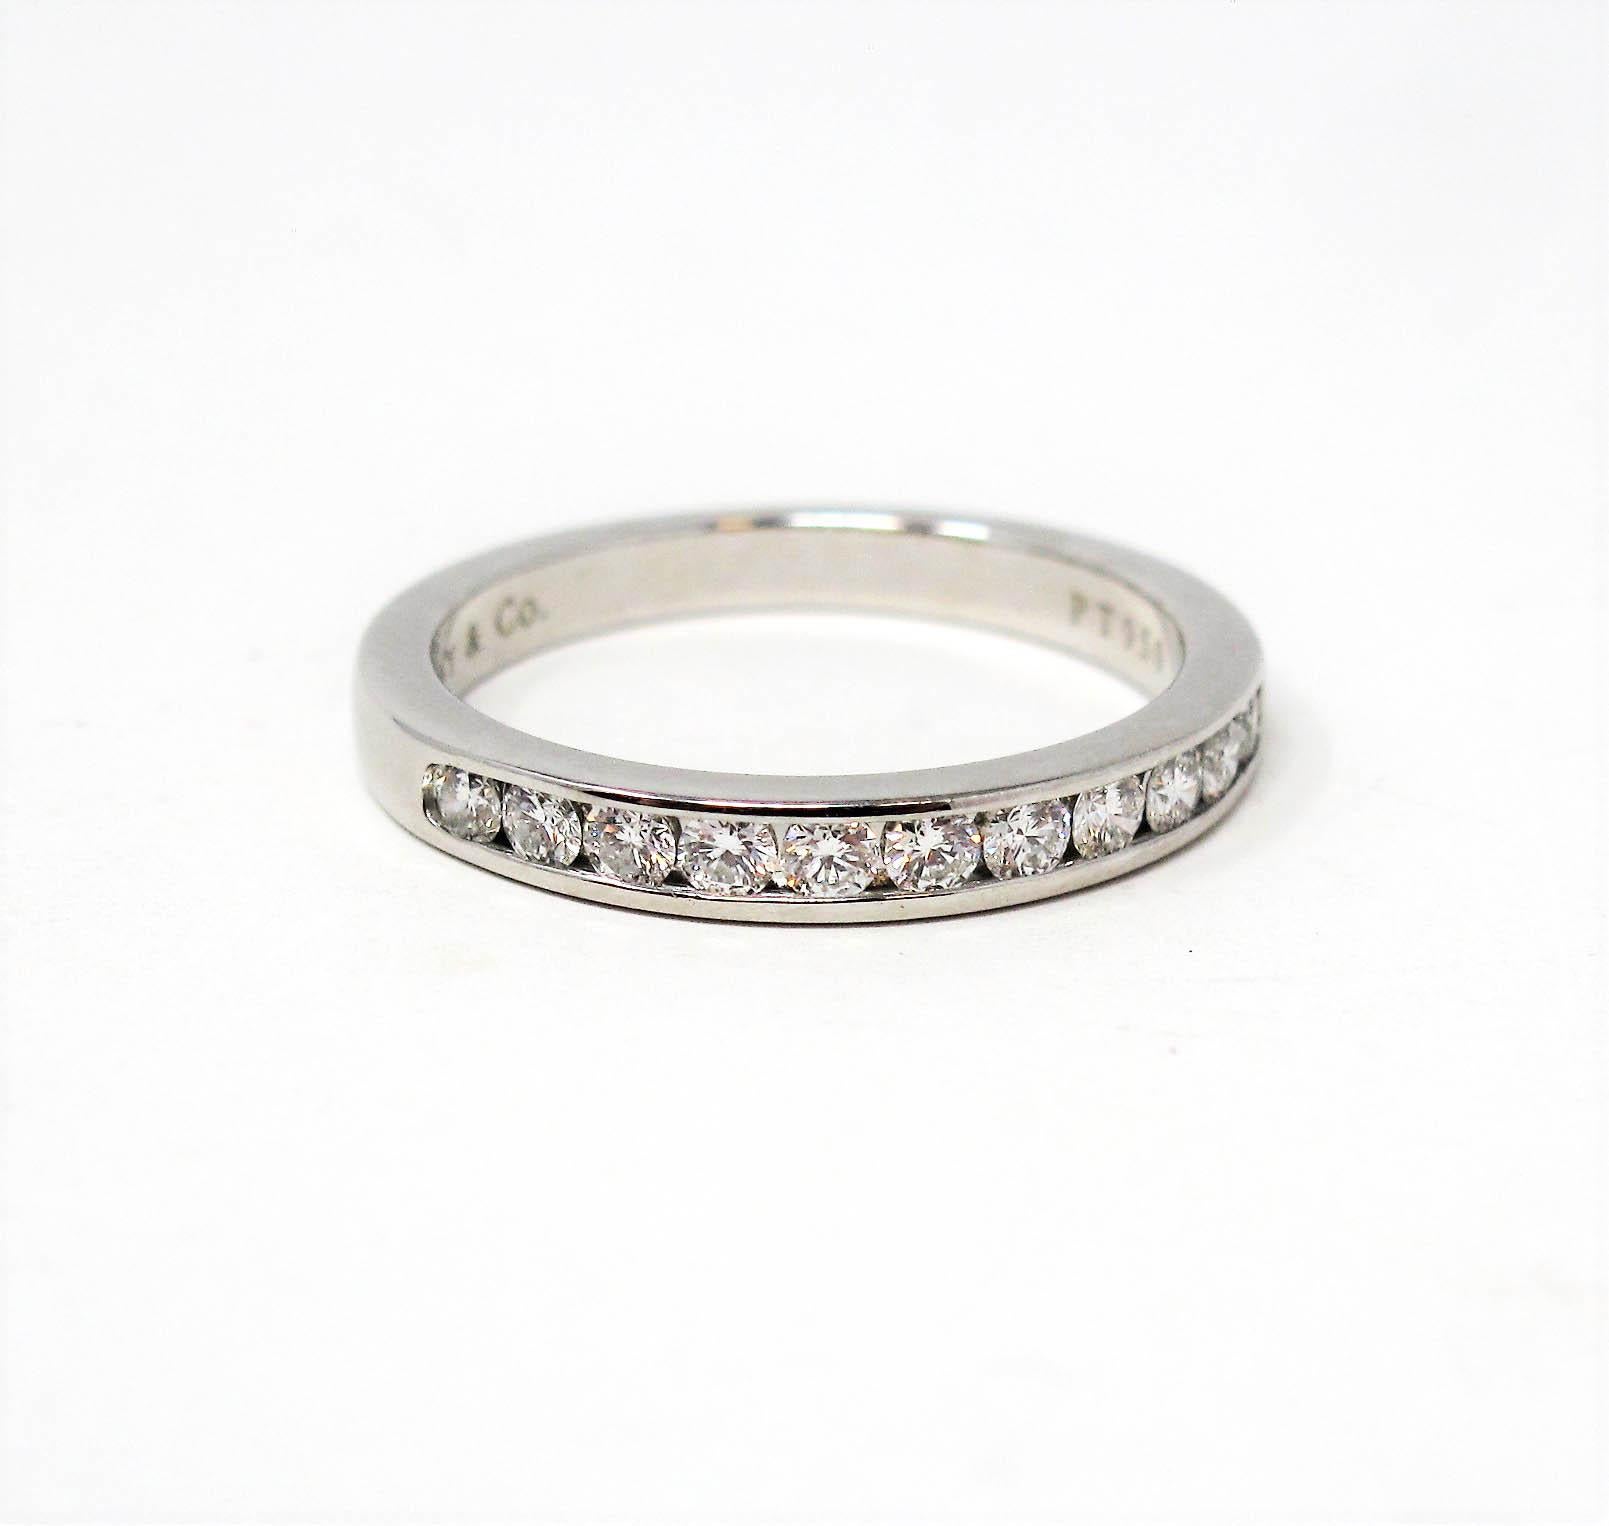 Atemberaubender Tiffany & Co. Diamant-Ring für die halbe Ewigkeit. Diese zeitlose Schönheit zeichnet sich durch eisweiße runde Diamanten aus, die in einer einzigen eleganten Reihe gefasst sind. Das glatte, polierte Band hat eine moderne und doch